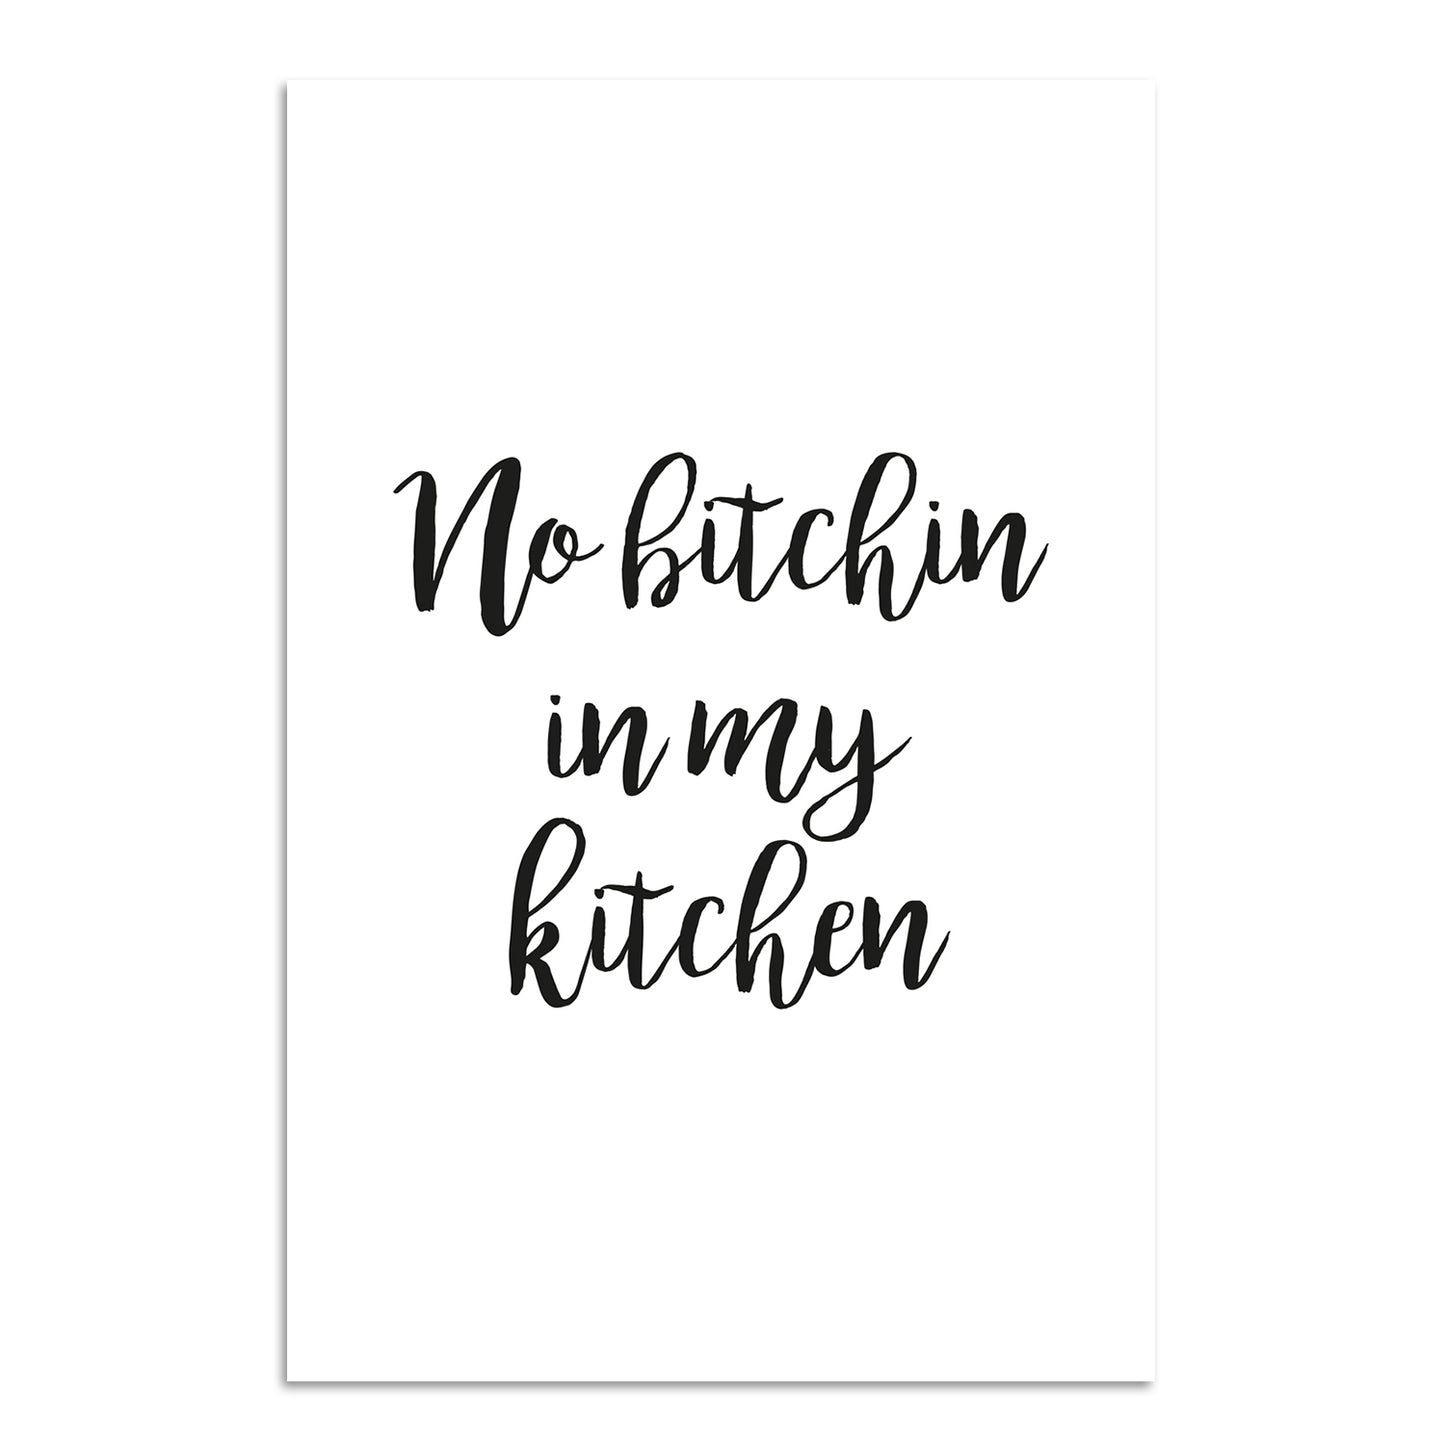 Blechschild - No bitchin iny my kitchen